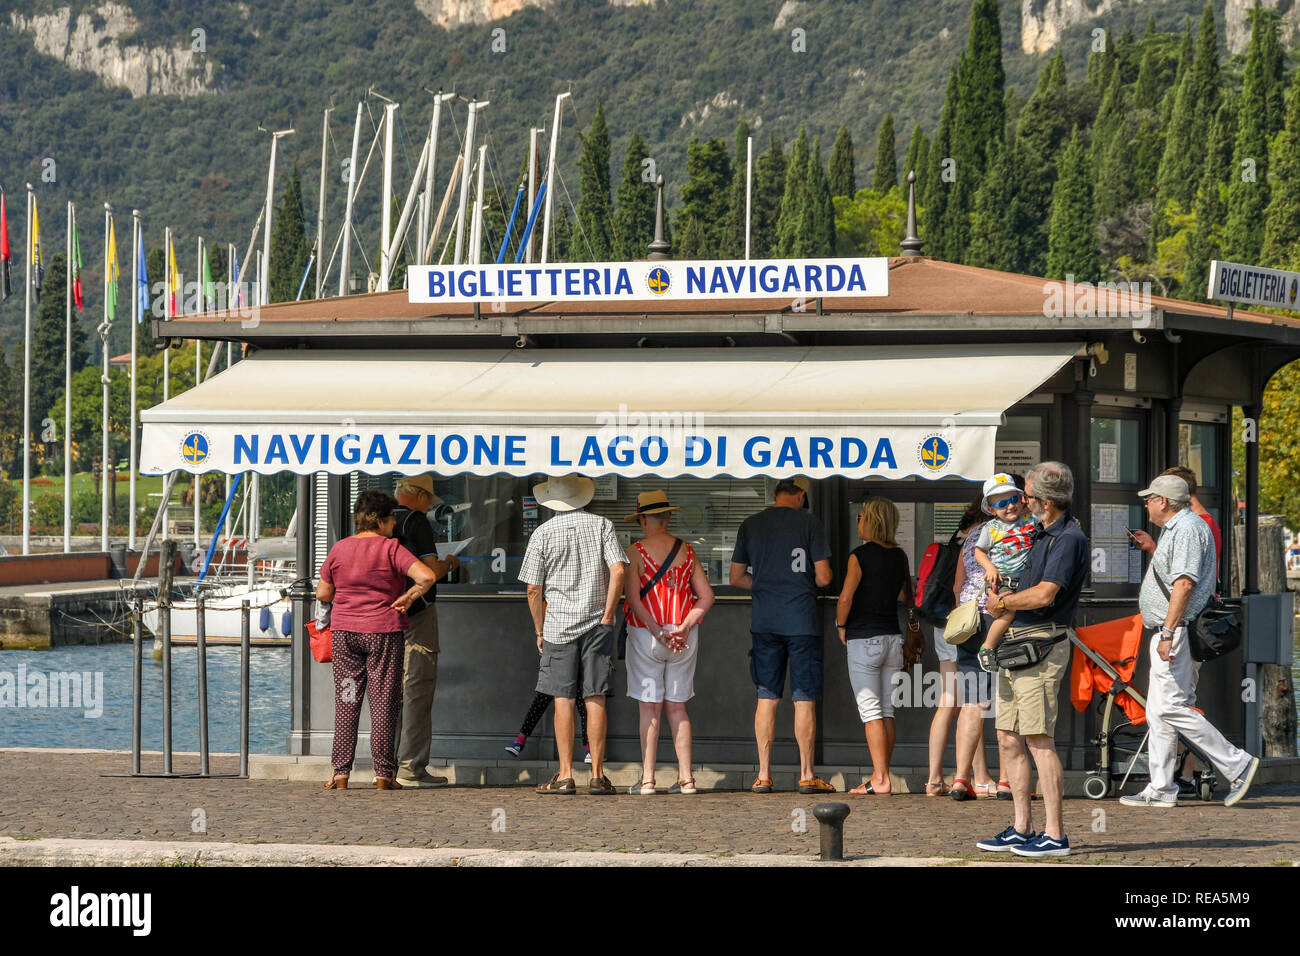 Il LAGO DI GARDA, Italia - Settembre 2018: persone in fila al chiosco dei biglietti per i traghetti dalla città del Garda sul Lago di Garda. Foto Stock